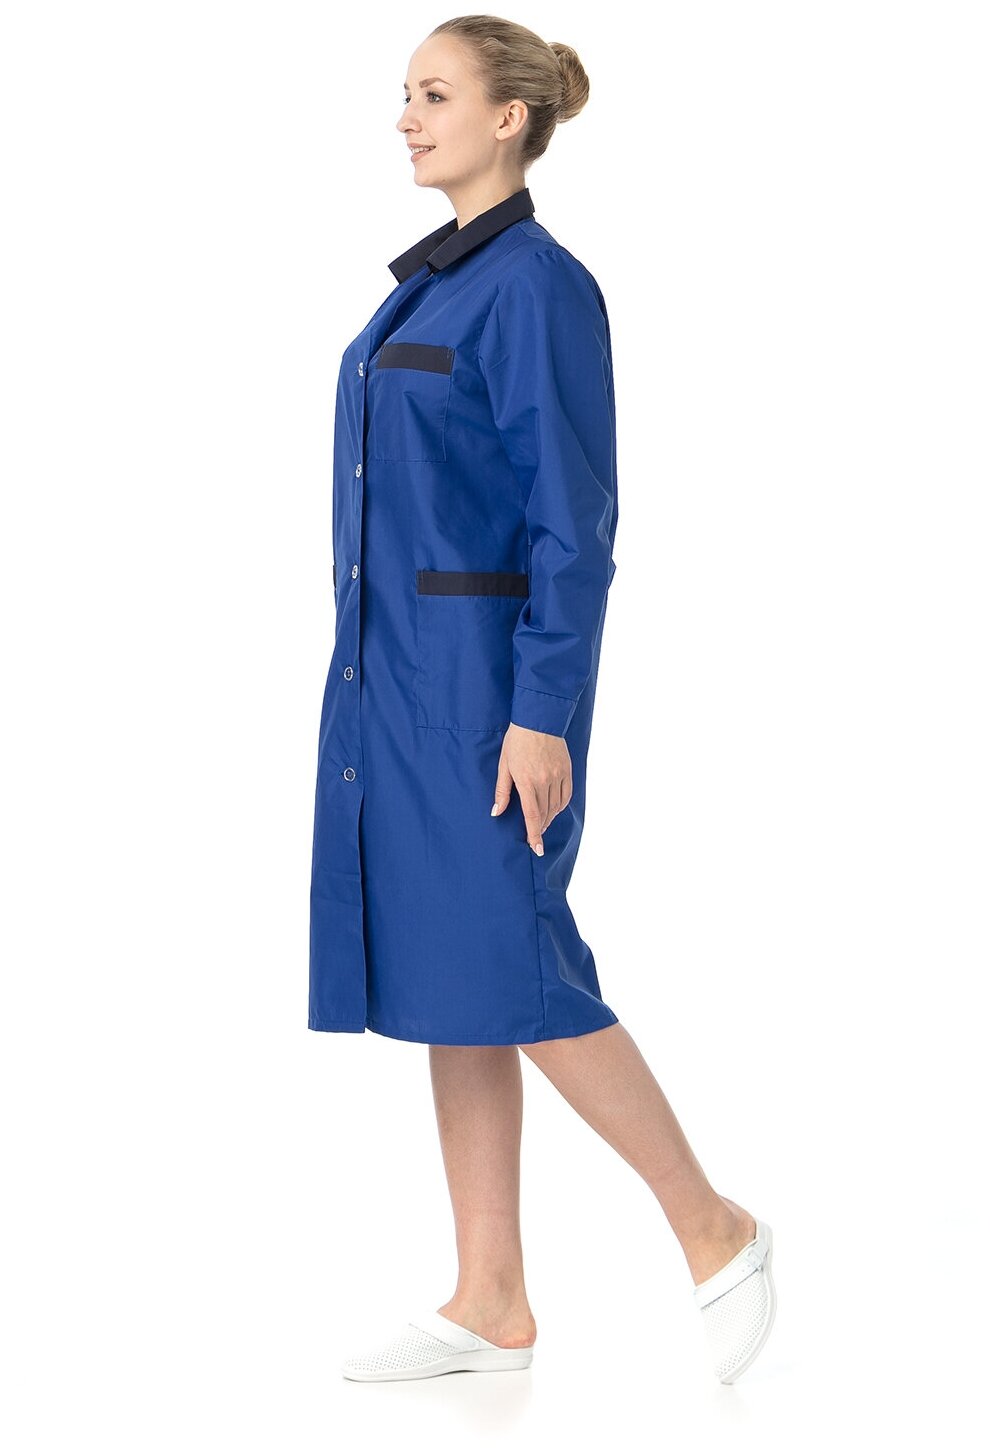 Халат женский "Модельный" (ИТР, васильковый с темно-синей отделкой) (размер 52-54, рост 158-164)